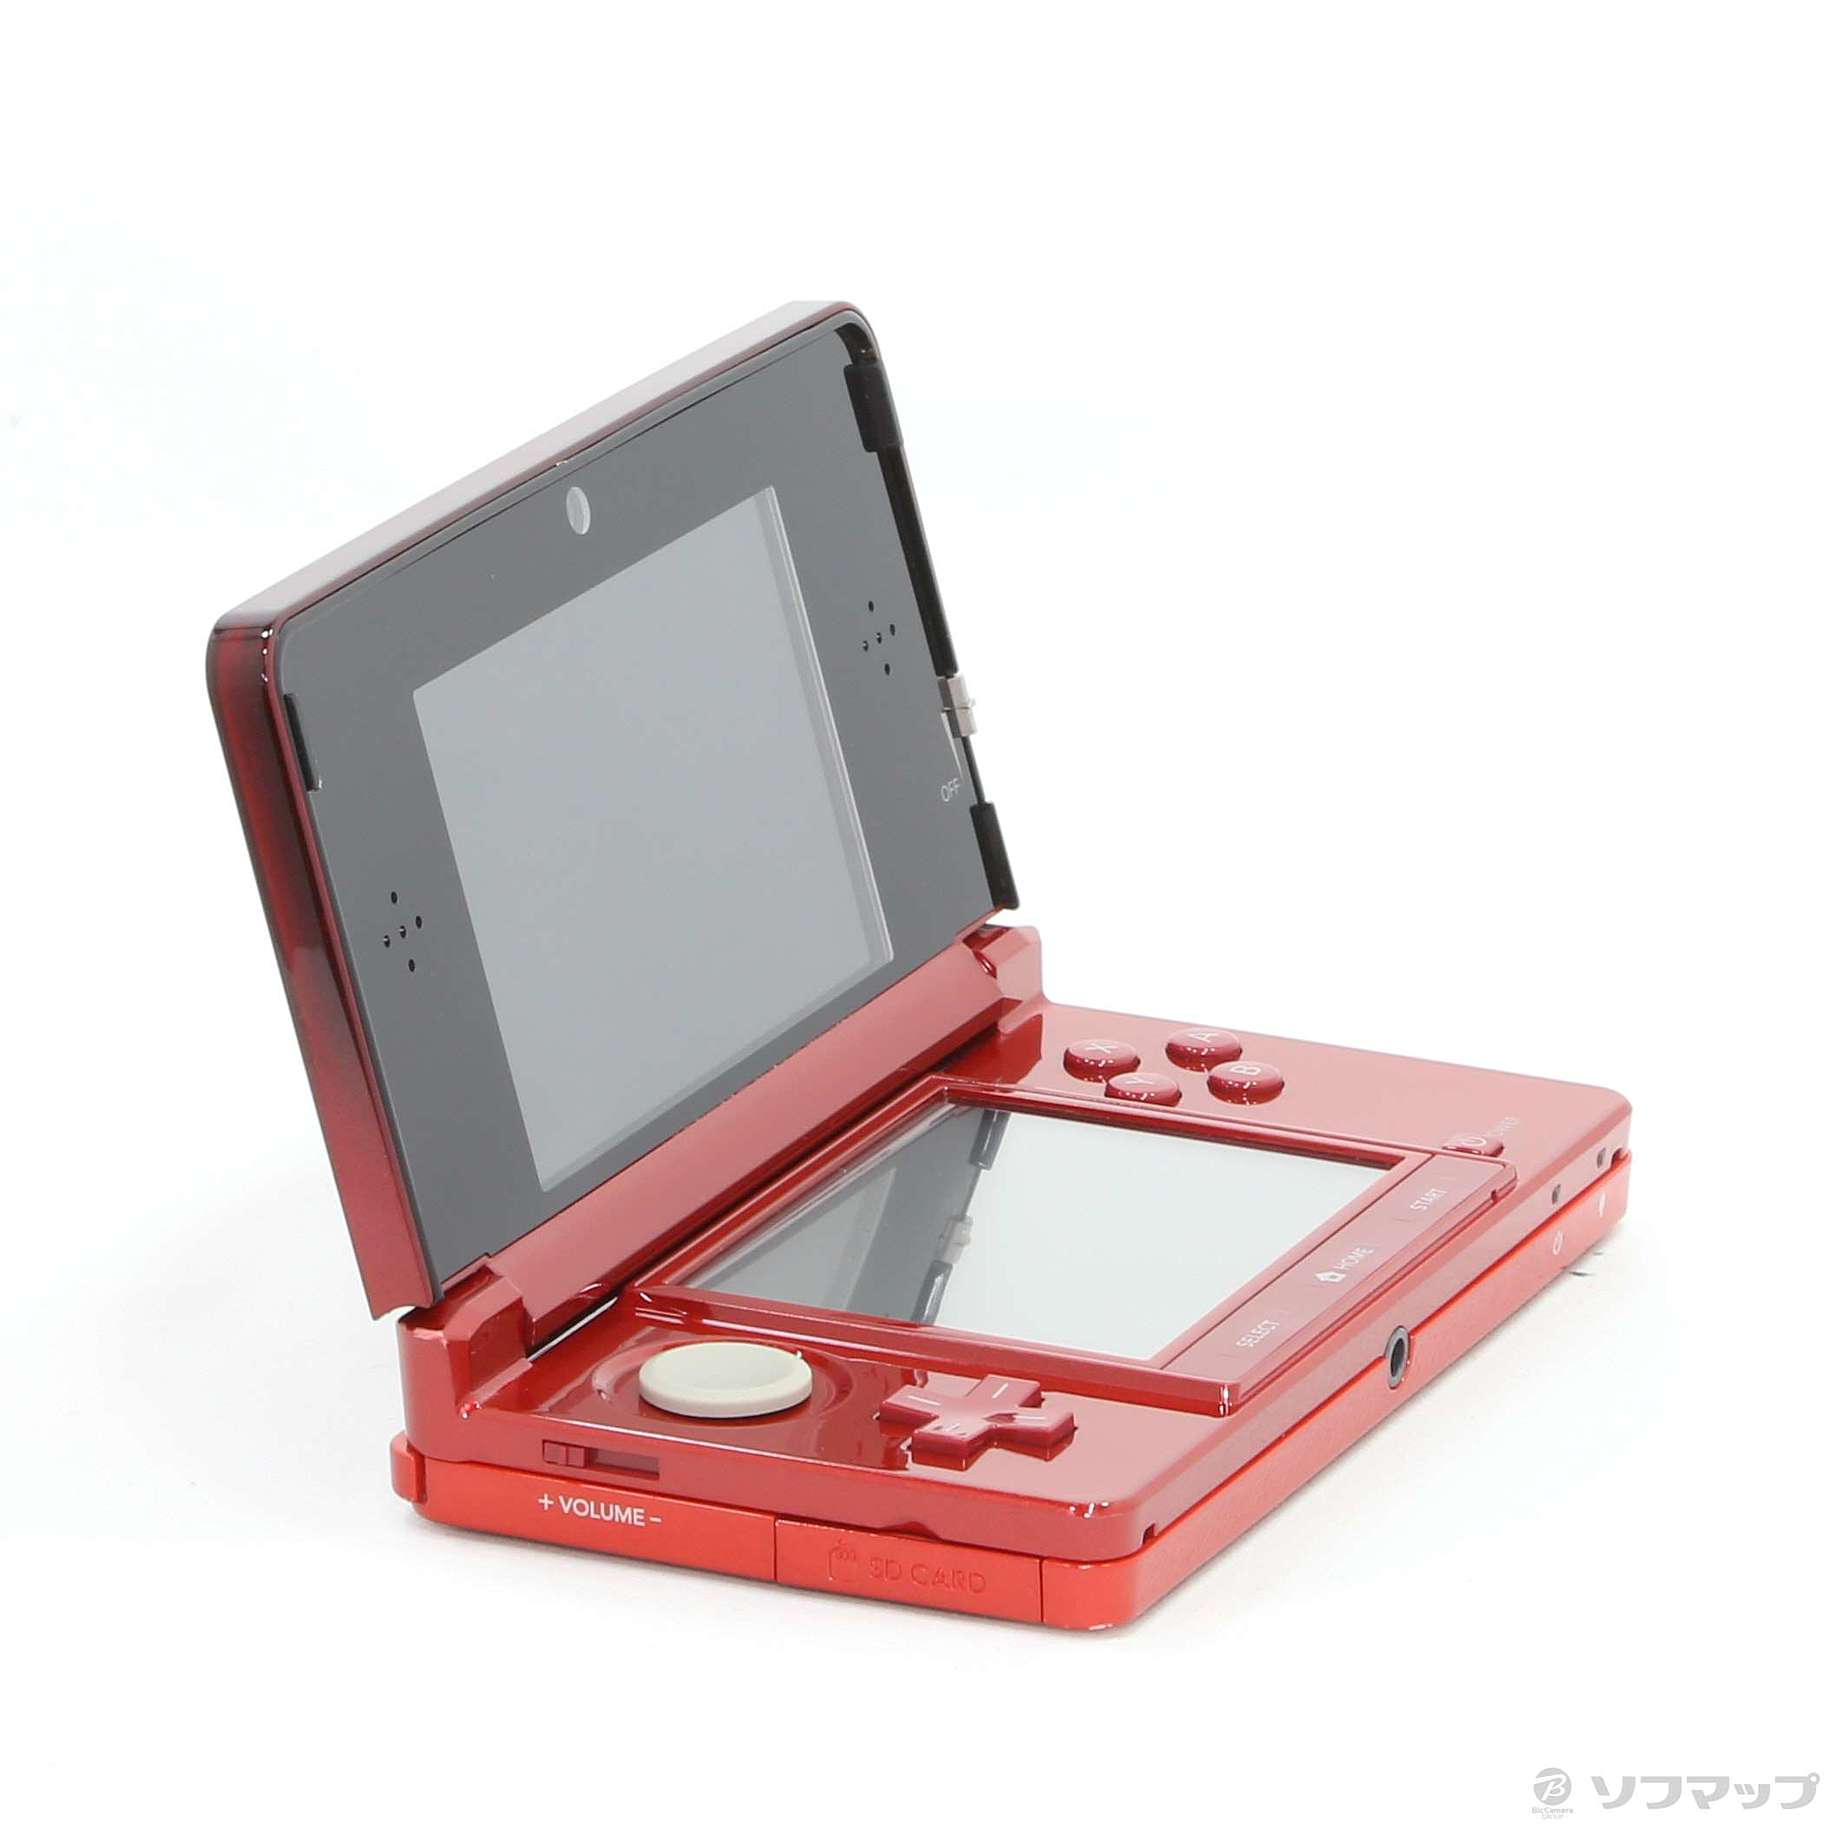 適当な価格 ニンテンドー 3DS 未使用品 レッド フレア Nintendo Switch 